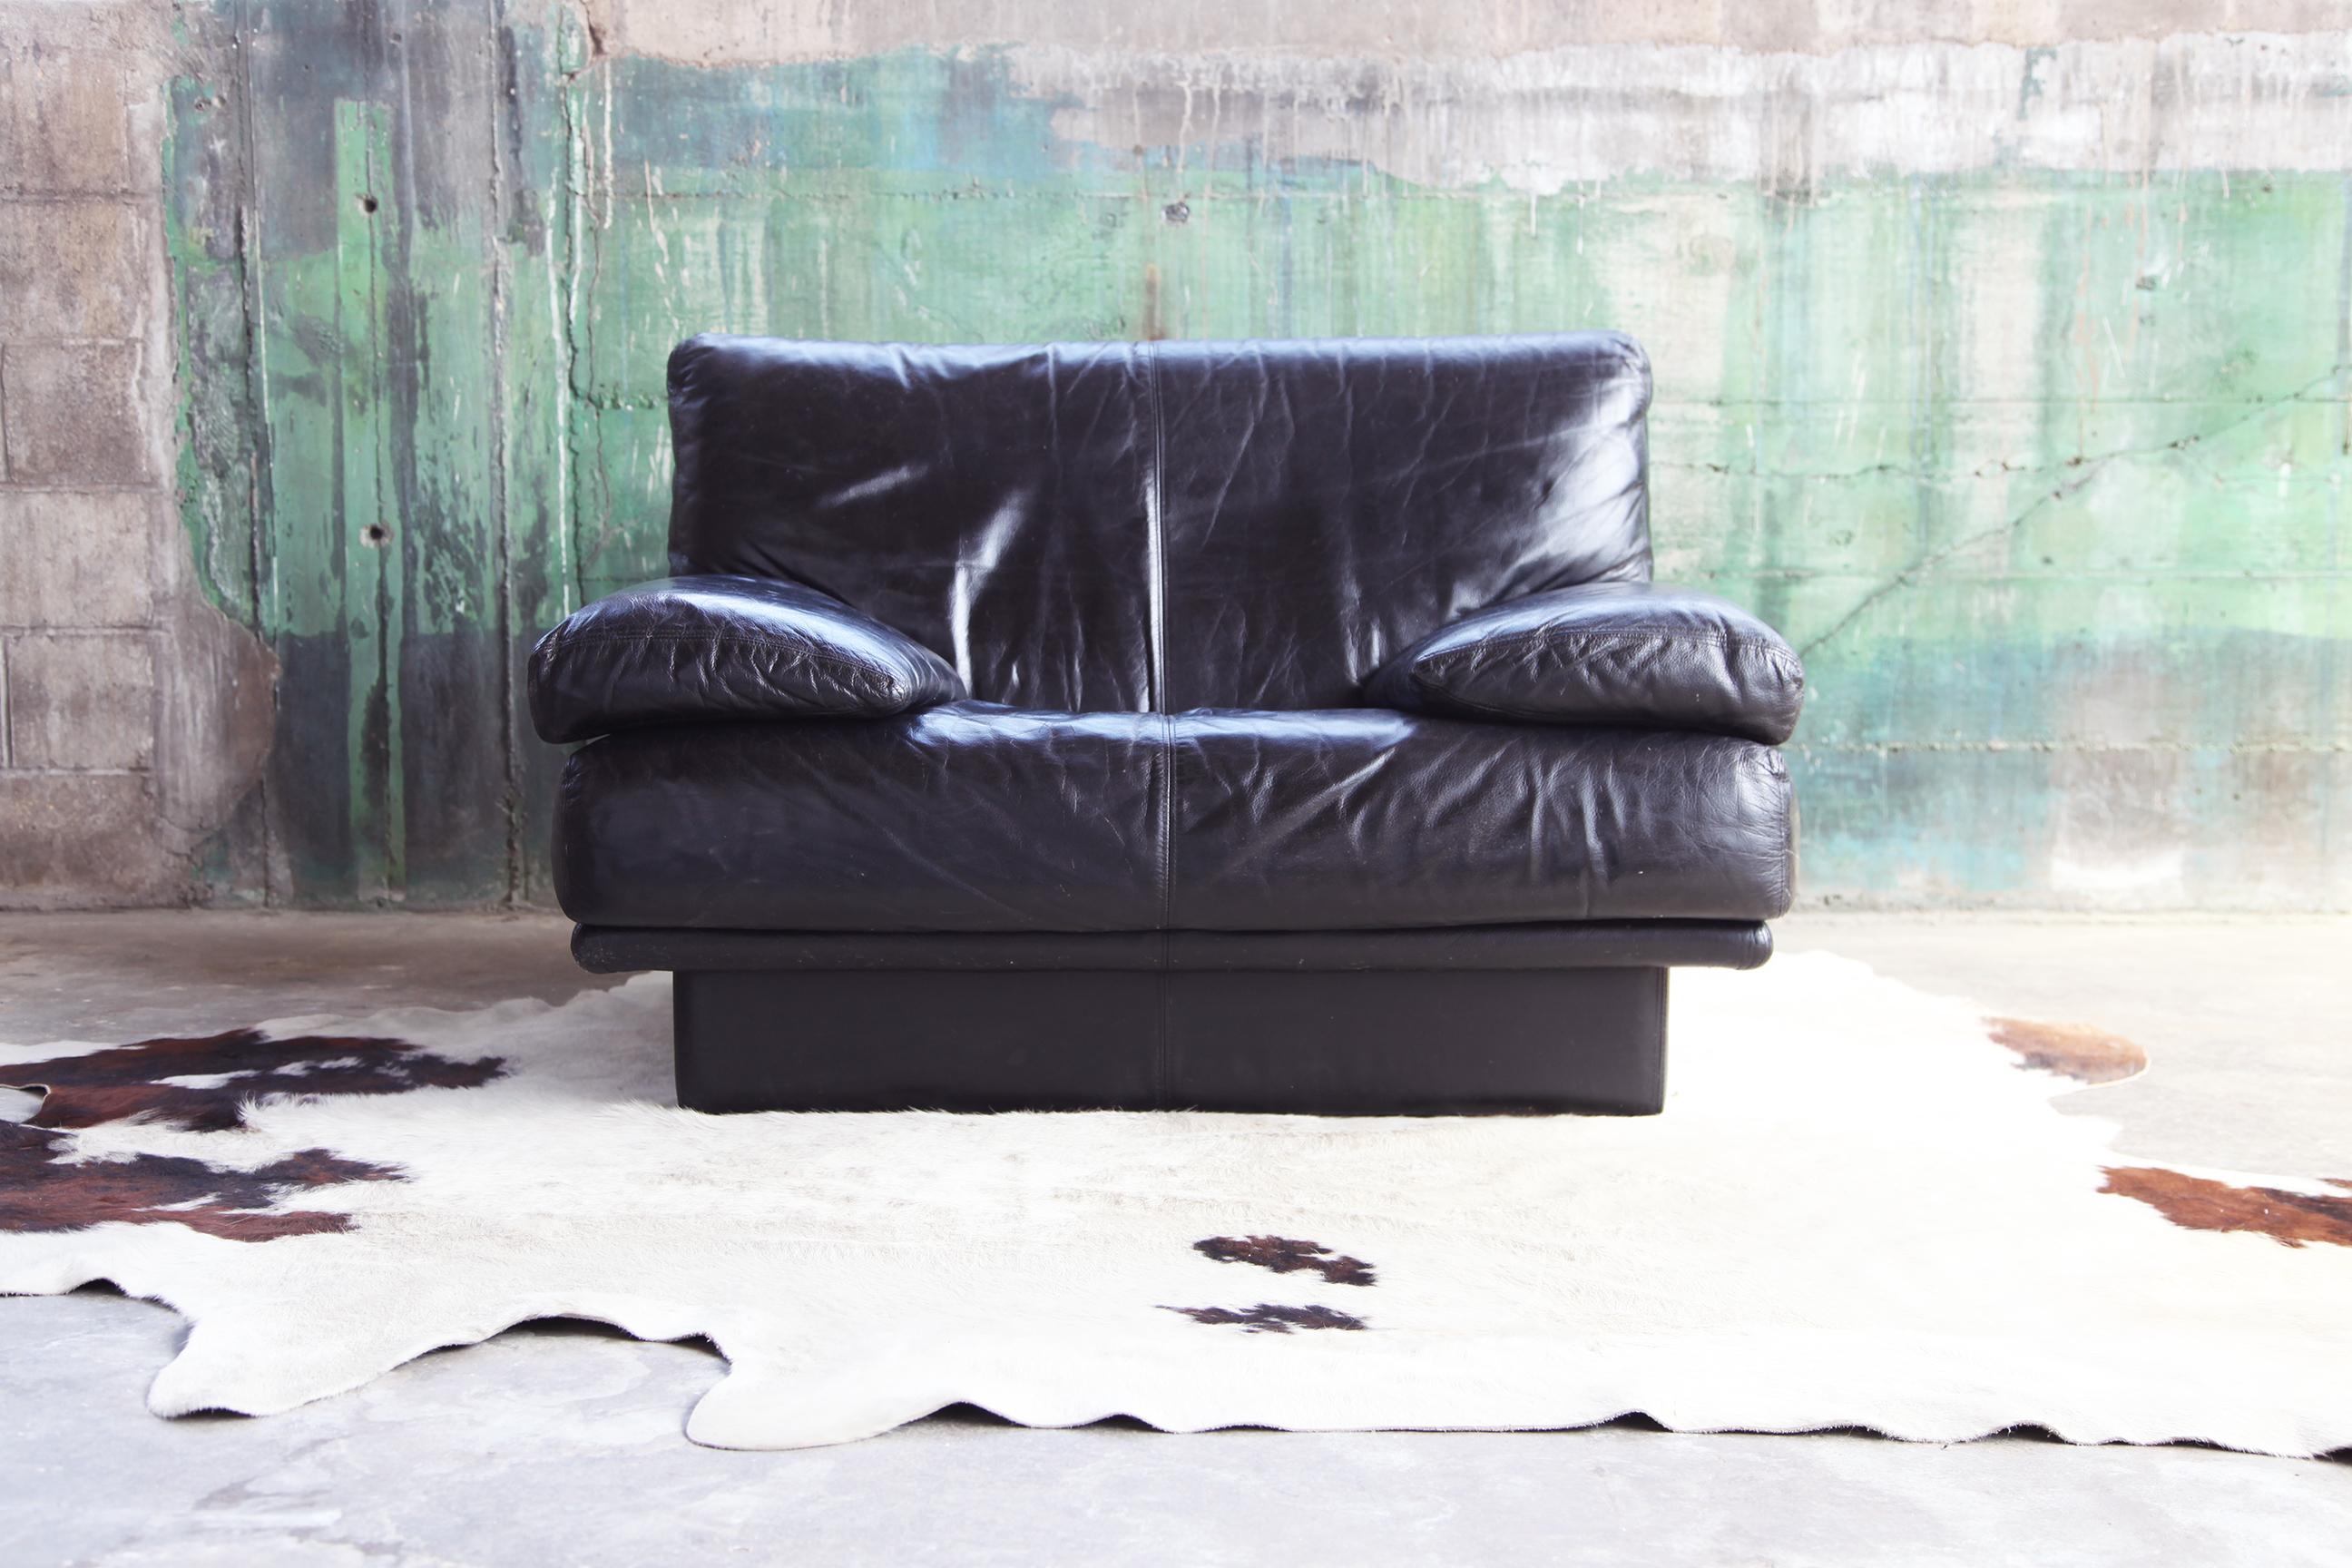 Dies ist ein Sofa, das sich für Ihr modernes, stilvolles und hochmodernes Ambiente eignet. Die Form ist skulptural und das Leder von phänomenaler Qualität. Die Ledernarbung ist schön, weich, aber dick und sehr bequem. Es gibt viele Orte, an denen